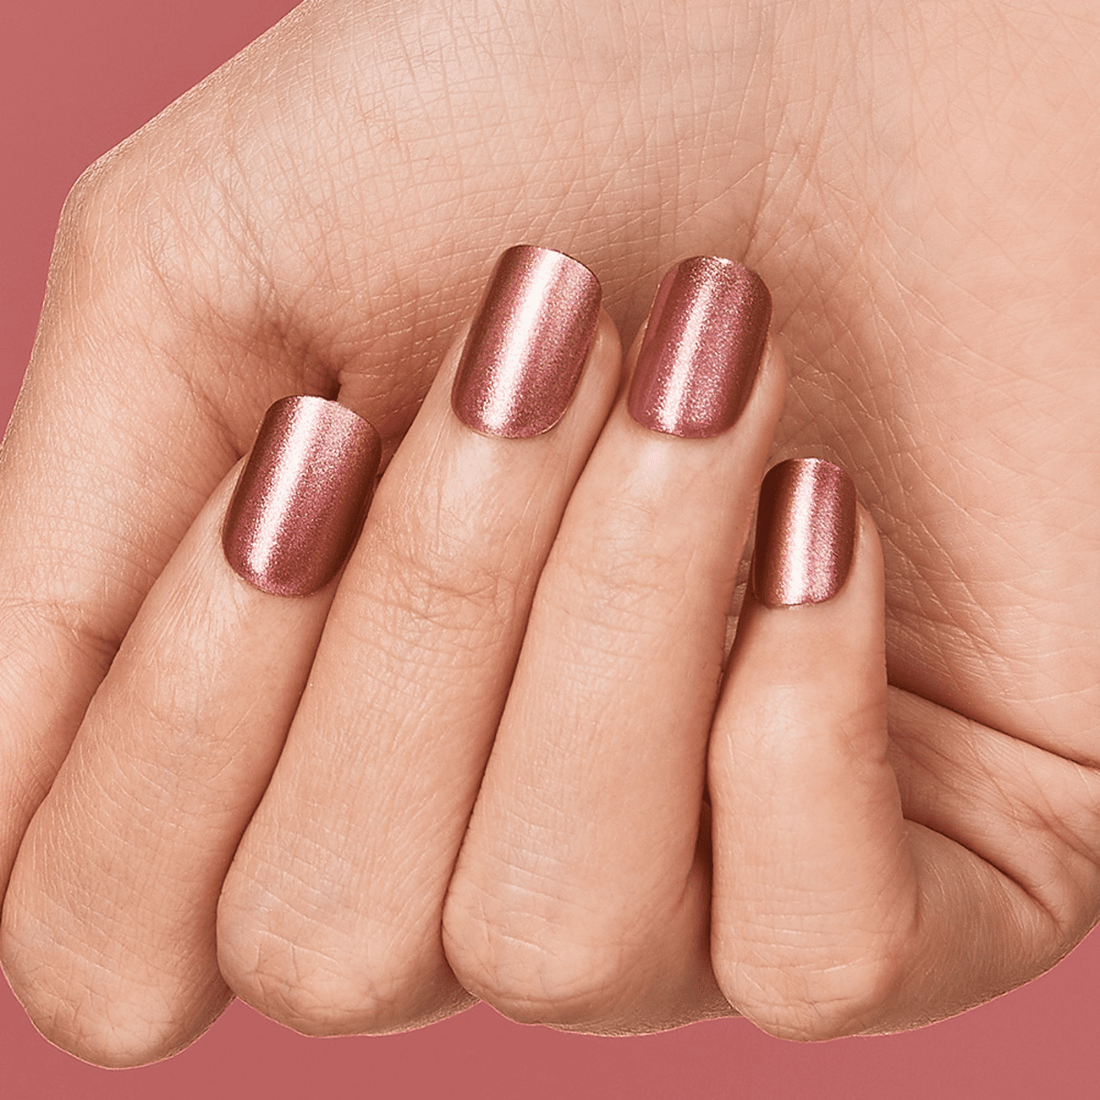 imPRESS Color Press-On Manicure - Peanut Pink